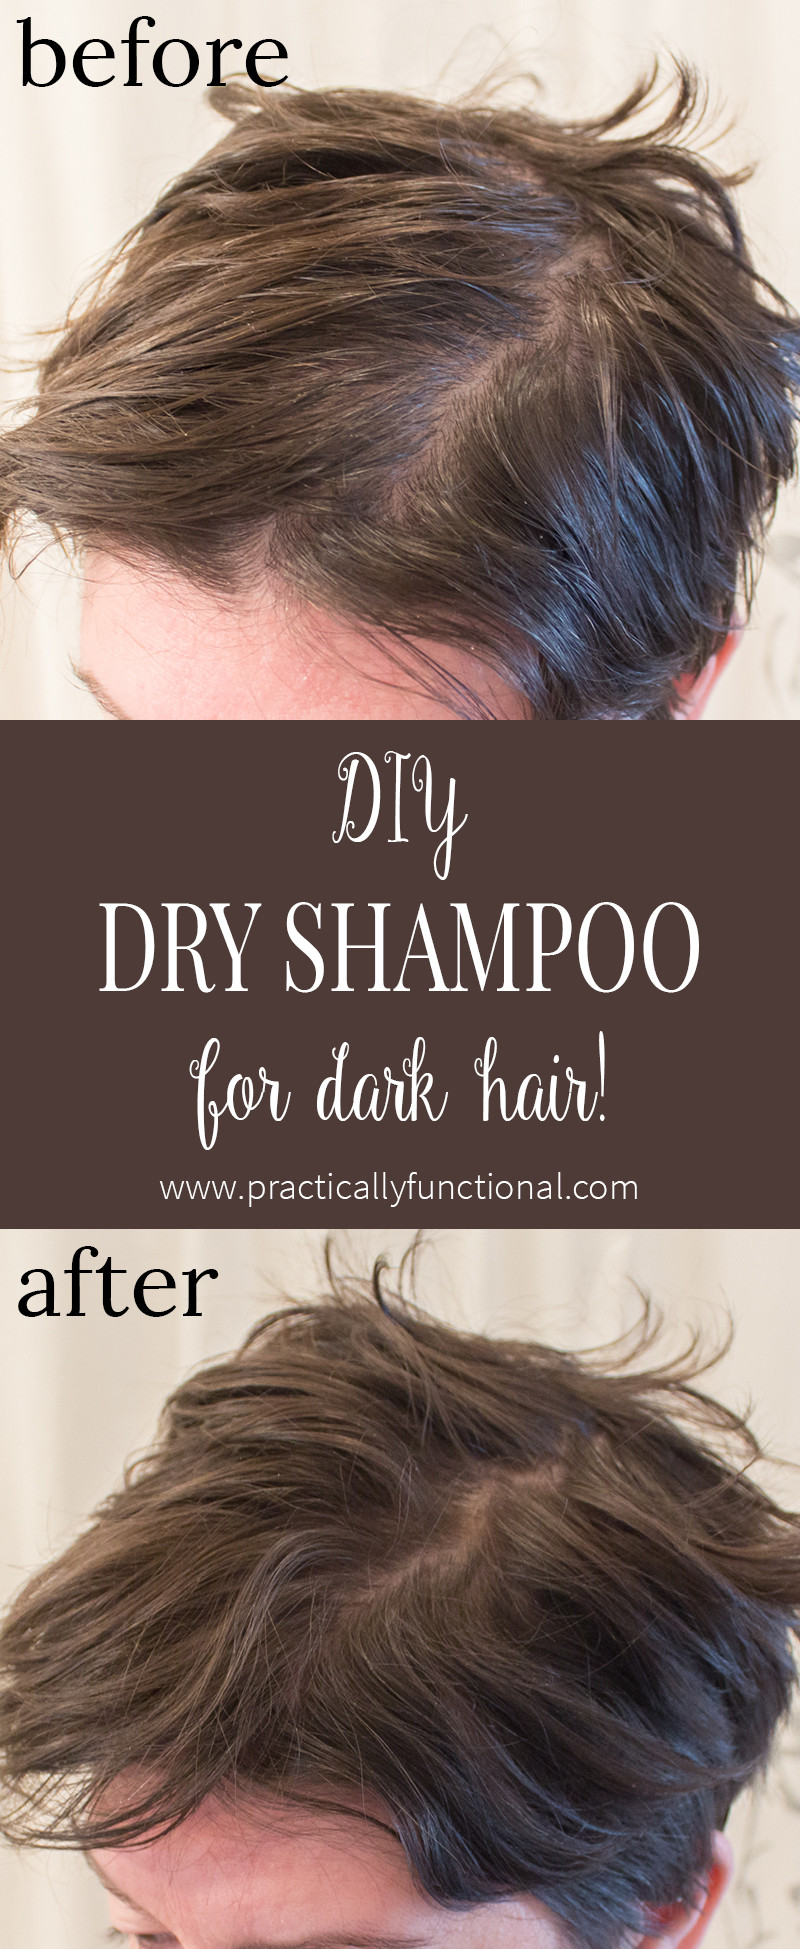 DIY Dry Shampoo For Dark Hair
 DIY Dry Shampoo For Dark Hair